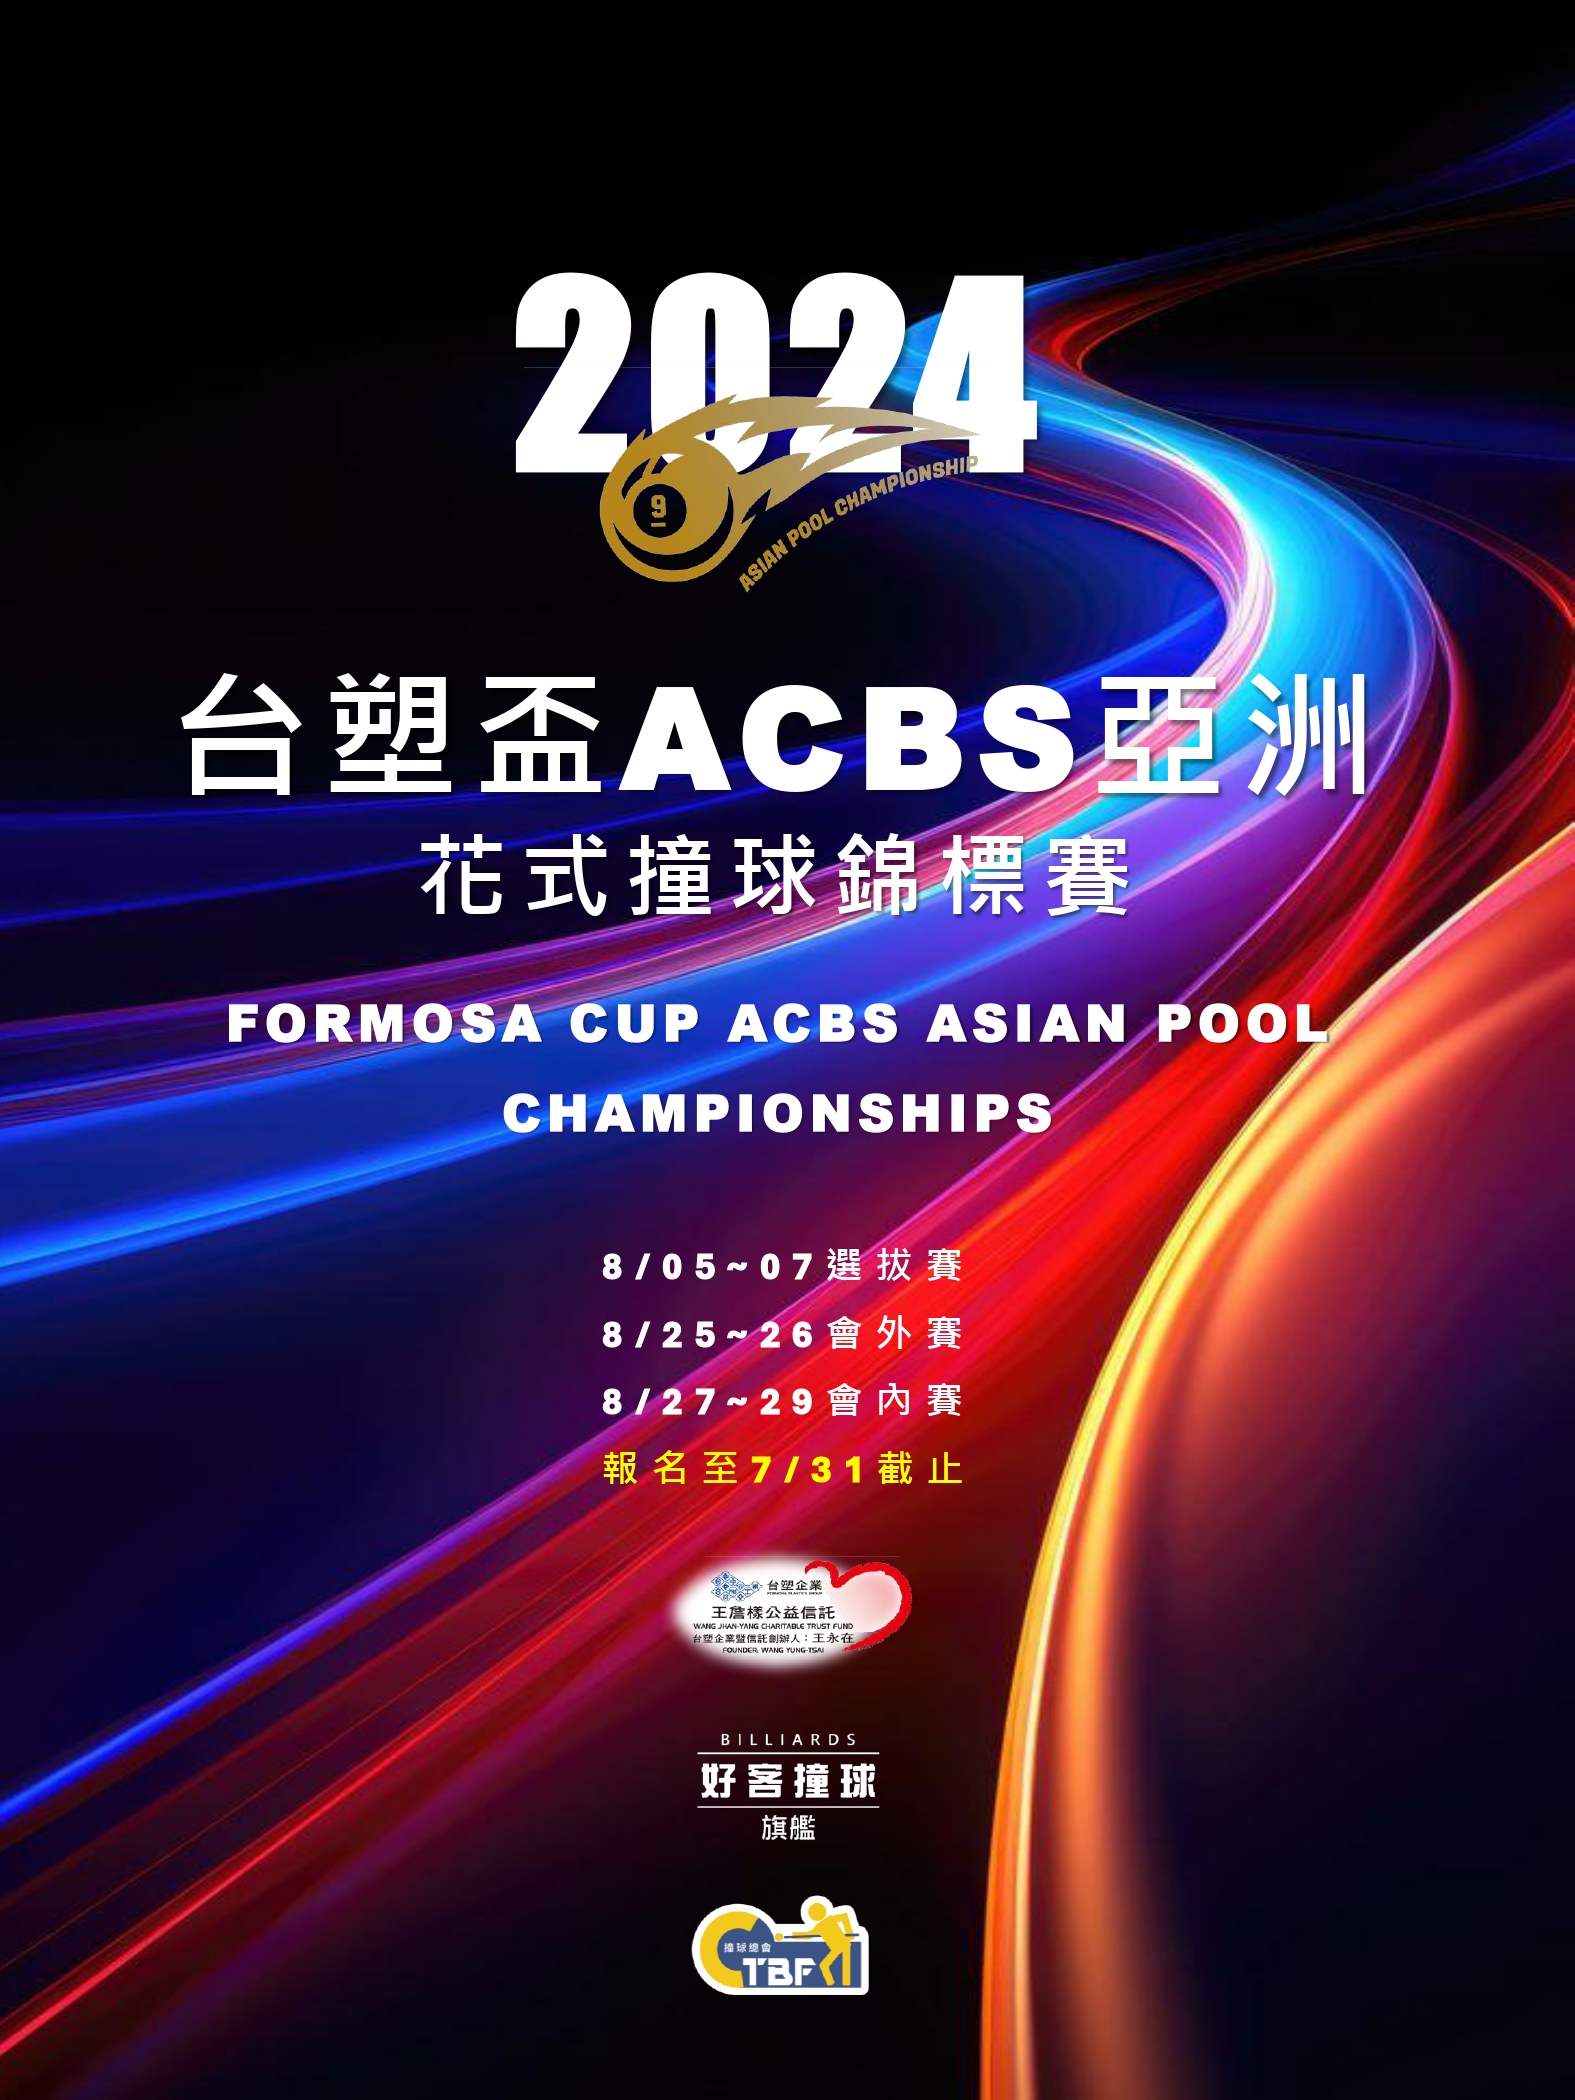 2024 台塑盃ACBS亞洲花式撞球錦標賽(宣傳中文版)_0725